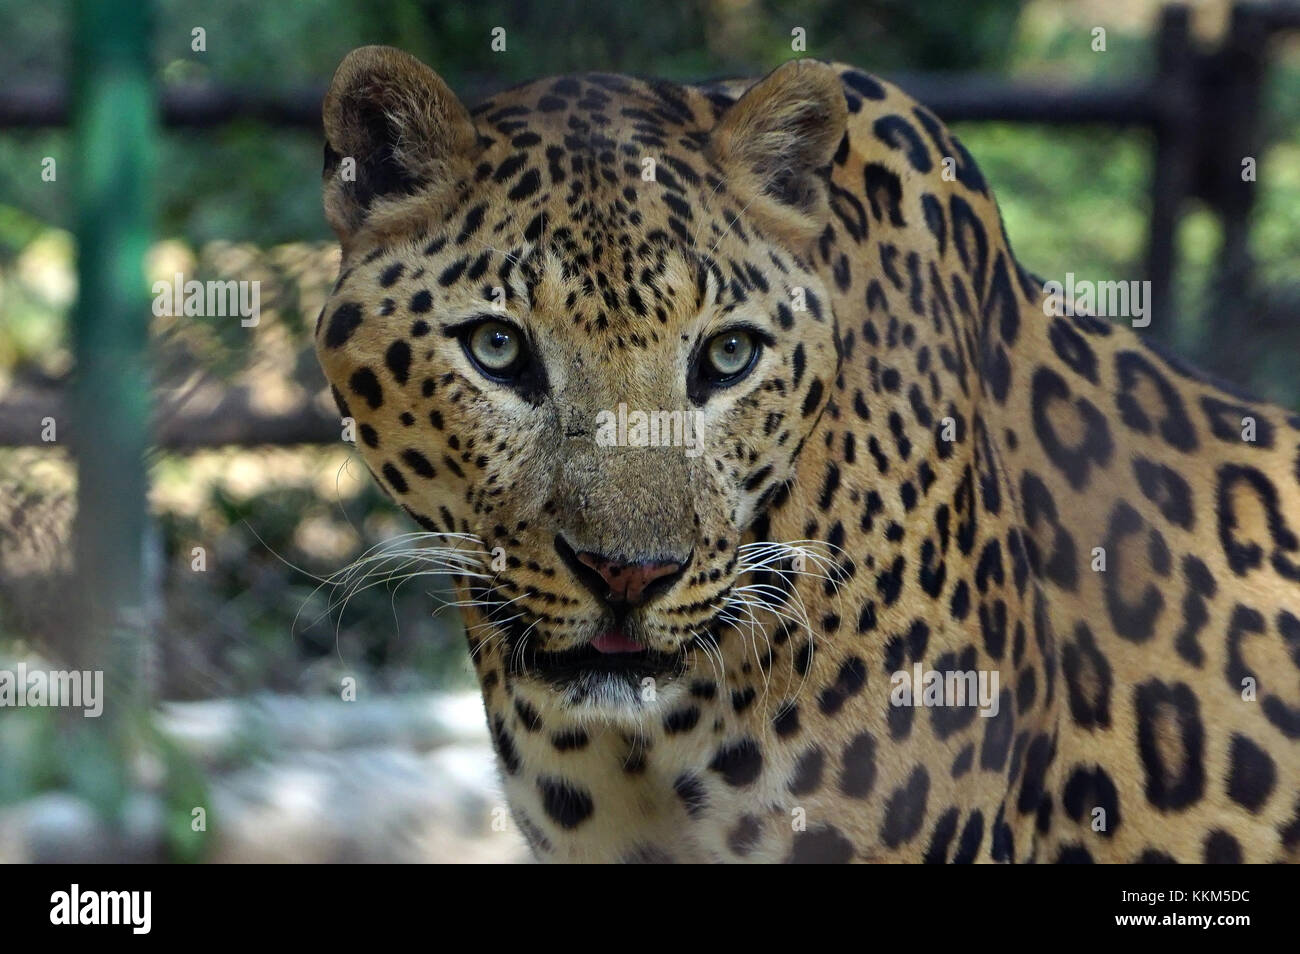 Una Jaguar a fissare la fotocamera mentre era all'interno della gabbia. Foto Stock